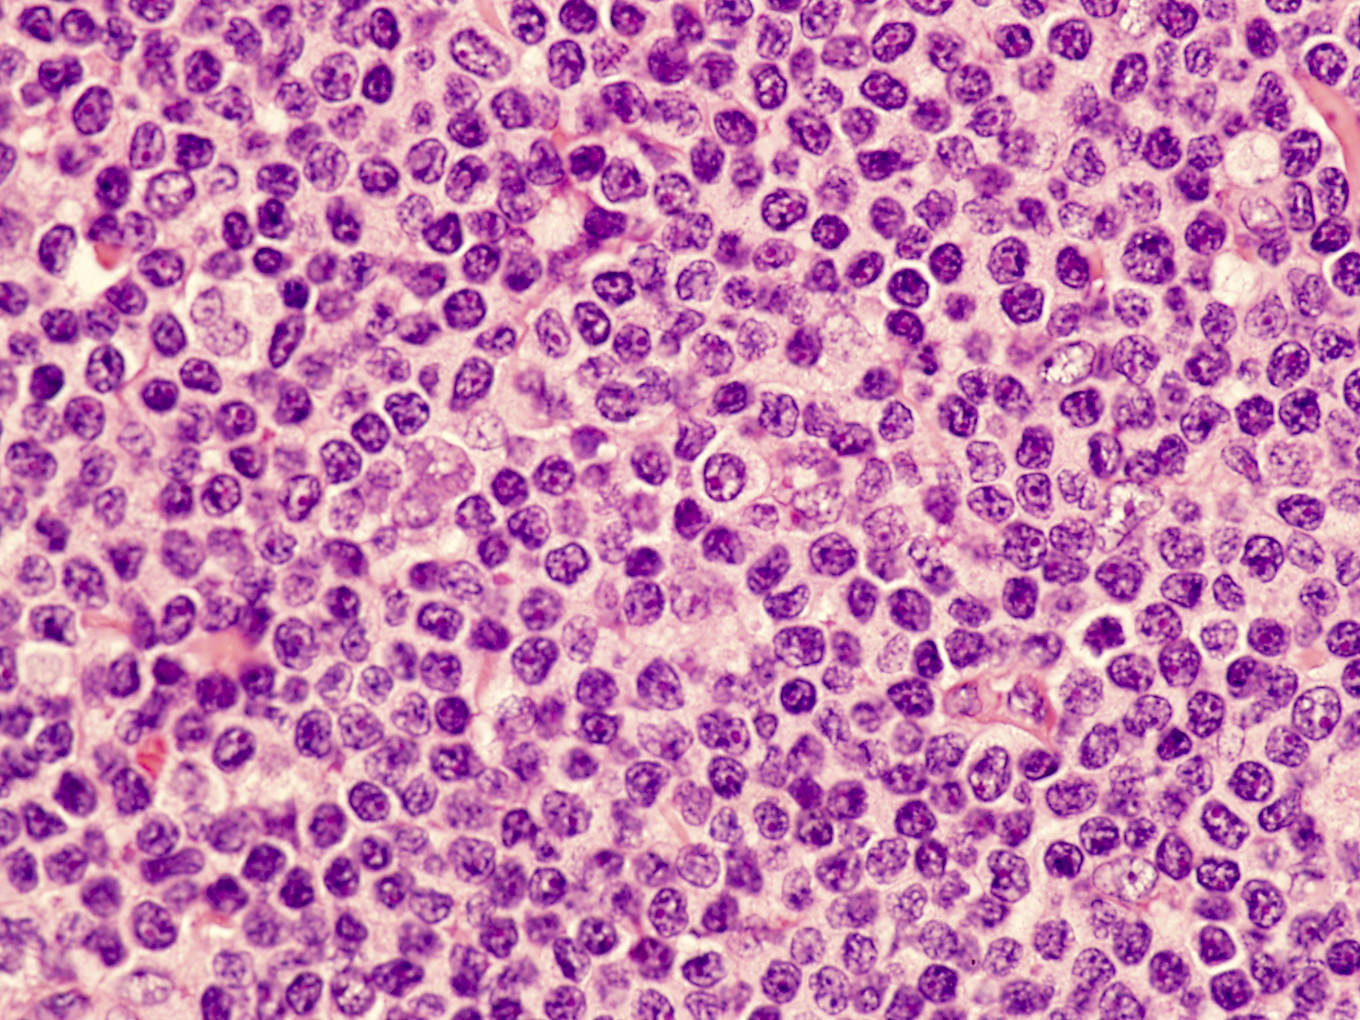 Intermediate size, atypical lymphocyte